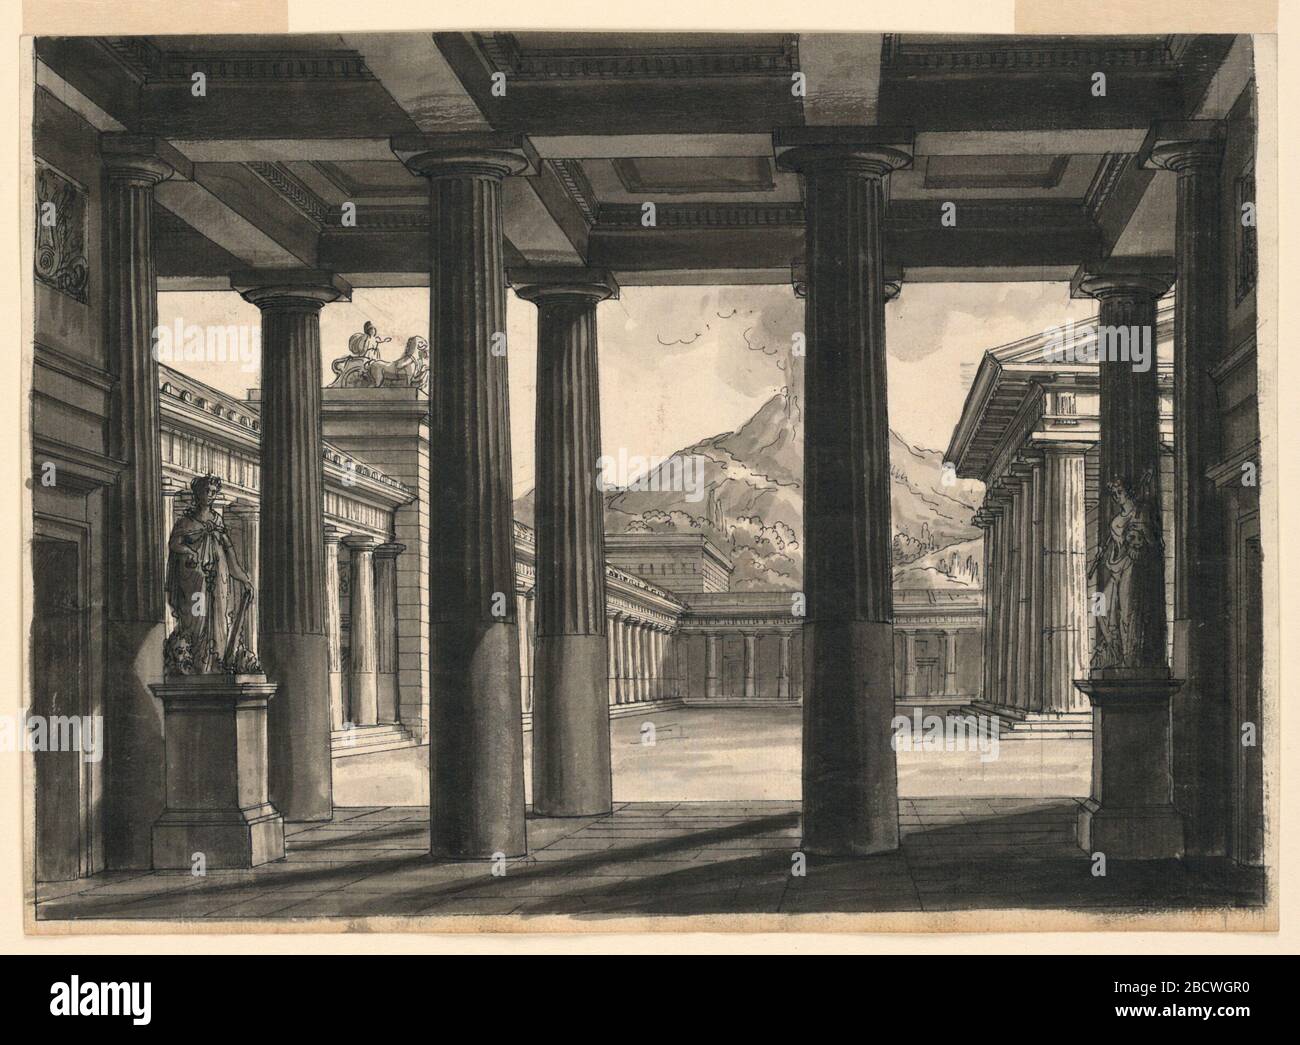 Bühnenbild für die Oper LUltima giorno di Pompei an der Scala Mailand im Jahre 1826. Forschung im ProgressHorizontal Rechteck. Portikos rund um ein Tempelgebäude, im Hintergrund ein ausbrechender Vulkan. Bühnenbild für die Oper LUltima giorno di Pompei an der Scala Mailand im Jahre 1826 Stockfoto